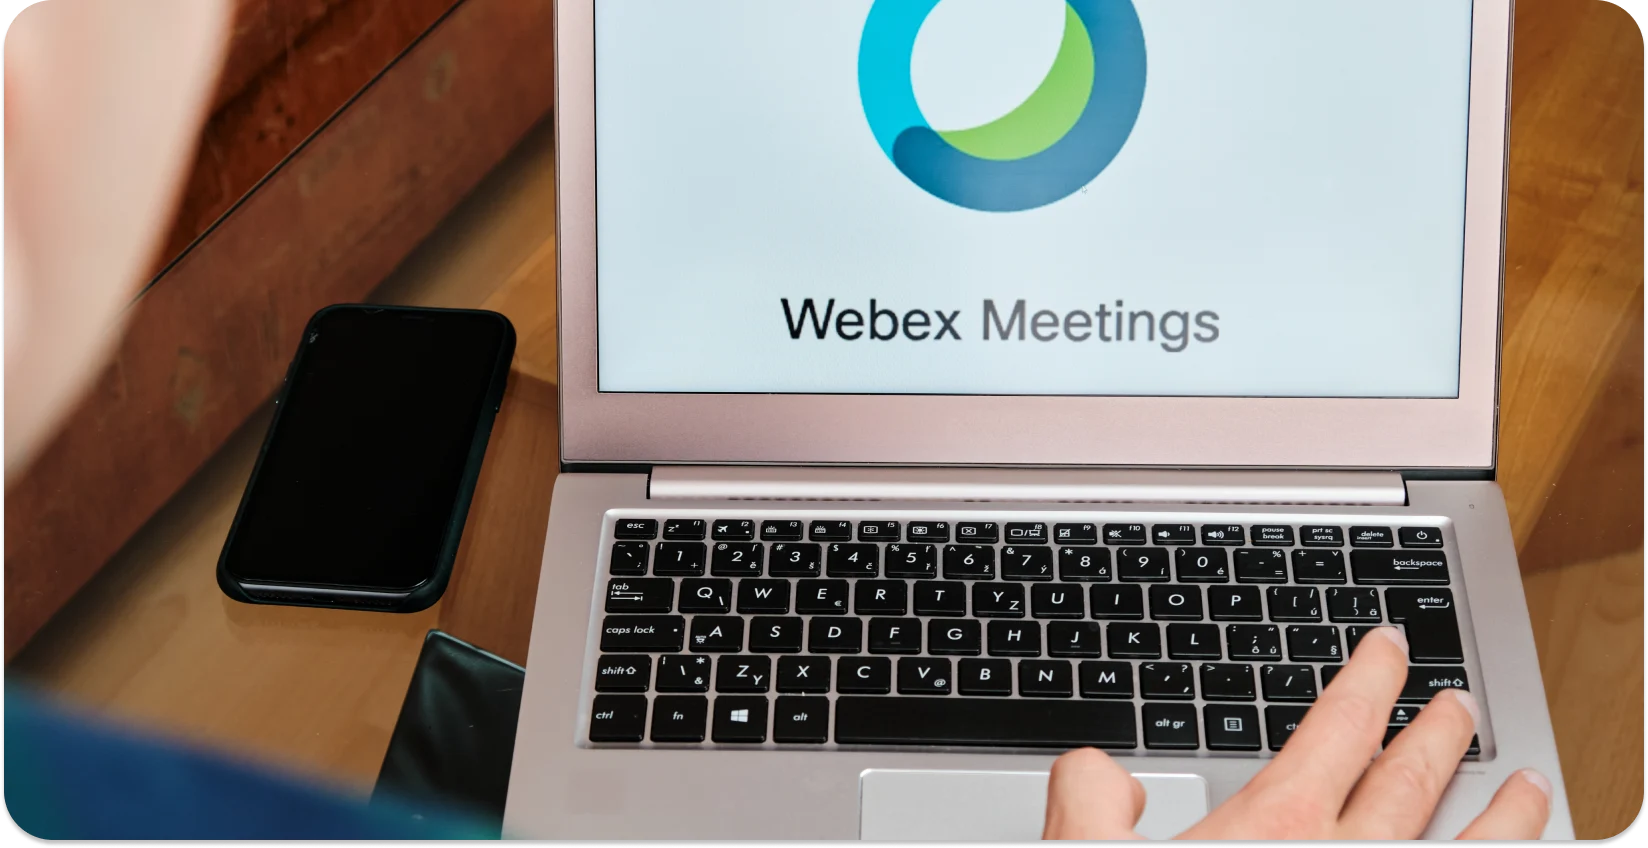 Egy személy, aki Webex értekezletet indít egy laptopon, készen áll az automatikus átírásra.